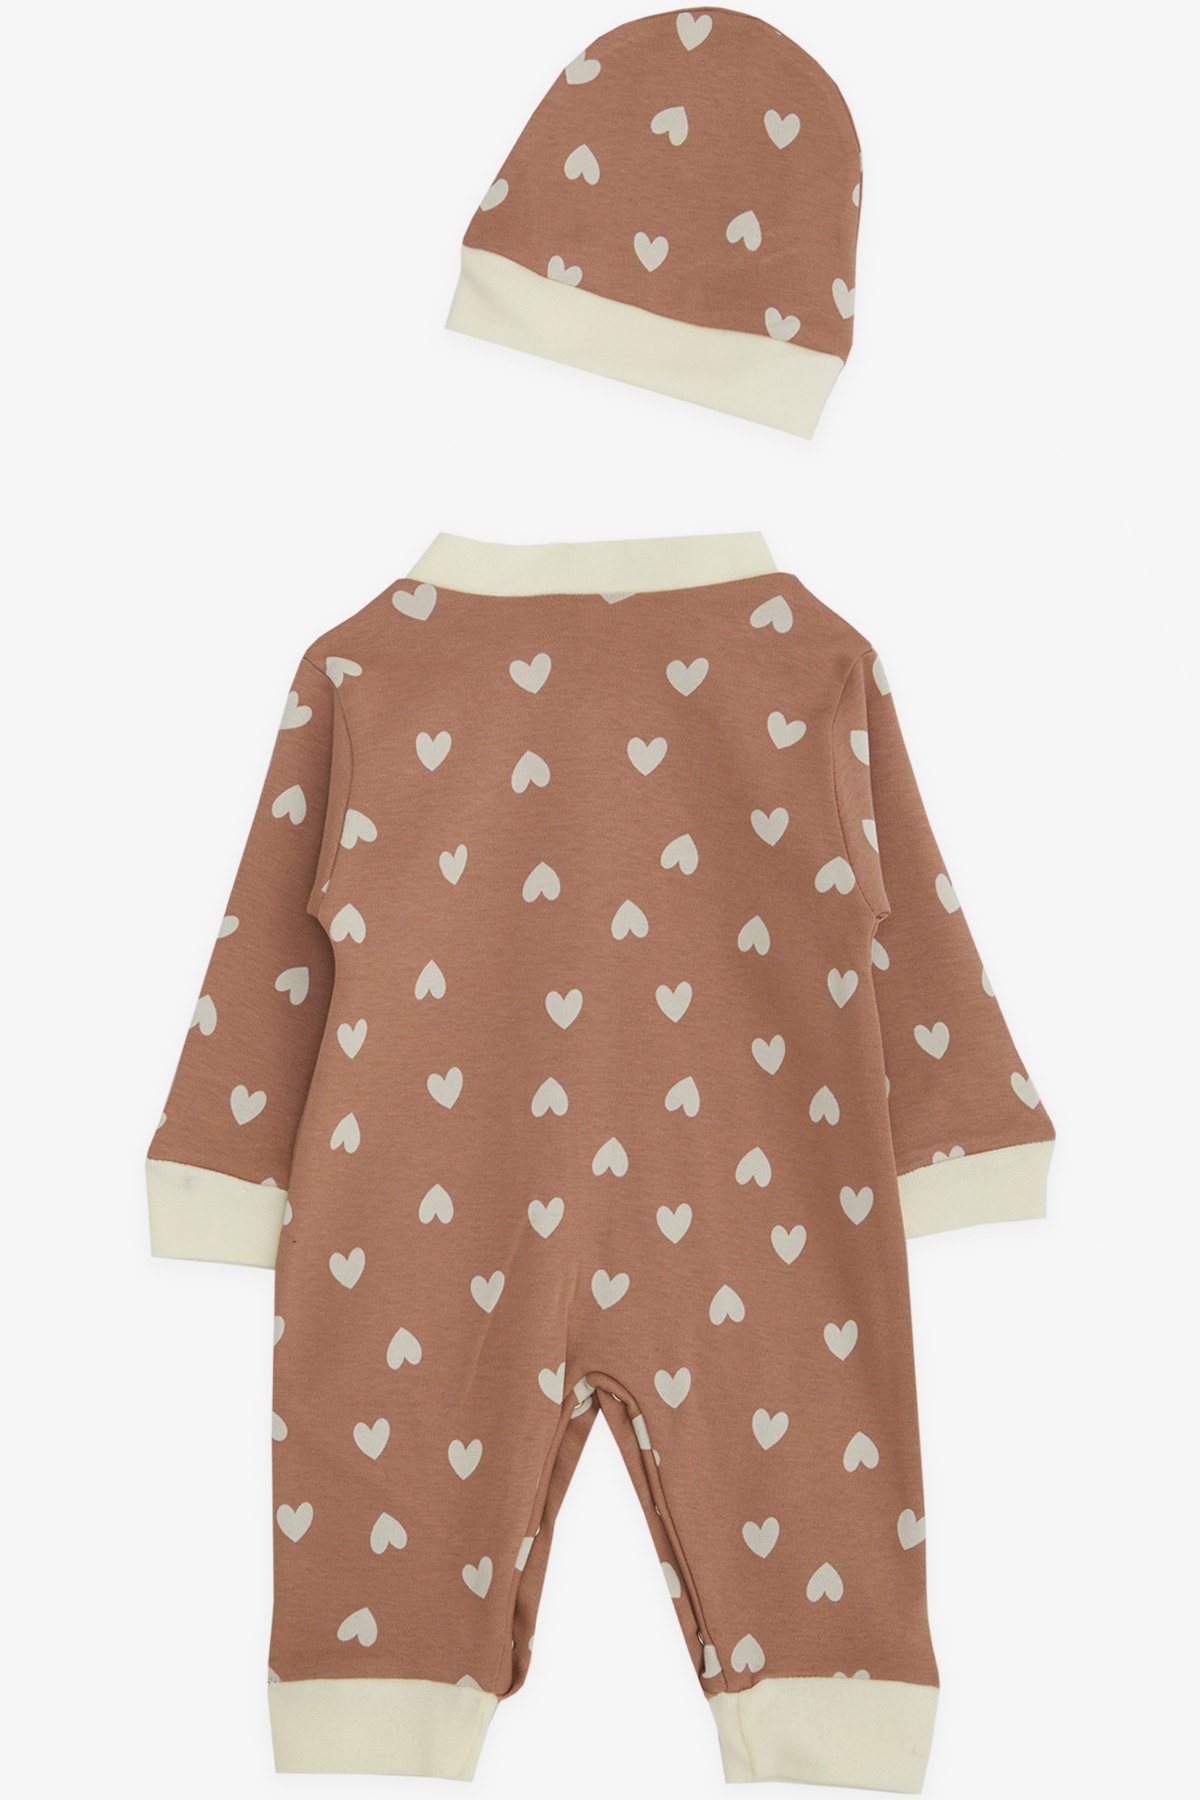 Kız Bebek Tulum Kalp Desenli Kahverengi 0-6 Ay - Pamuklu Bebek Tulumları |  Breeze